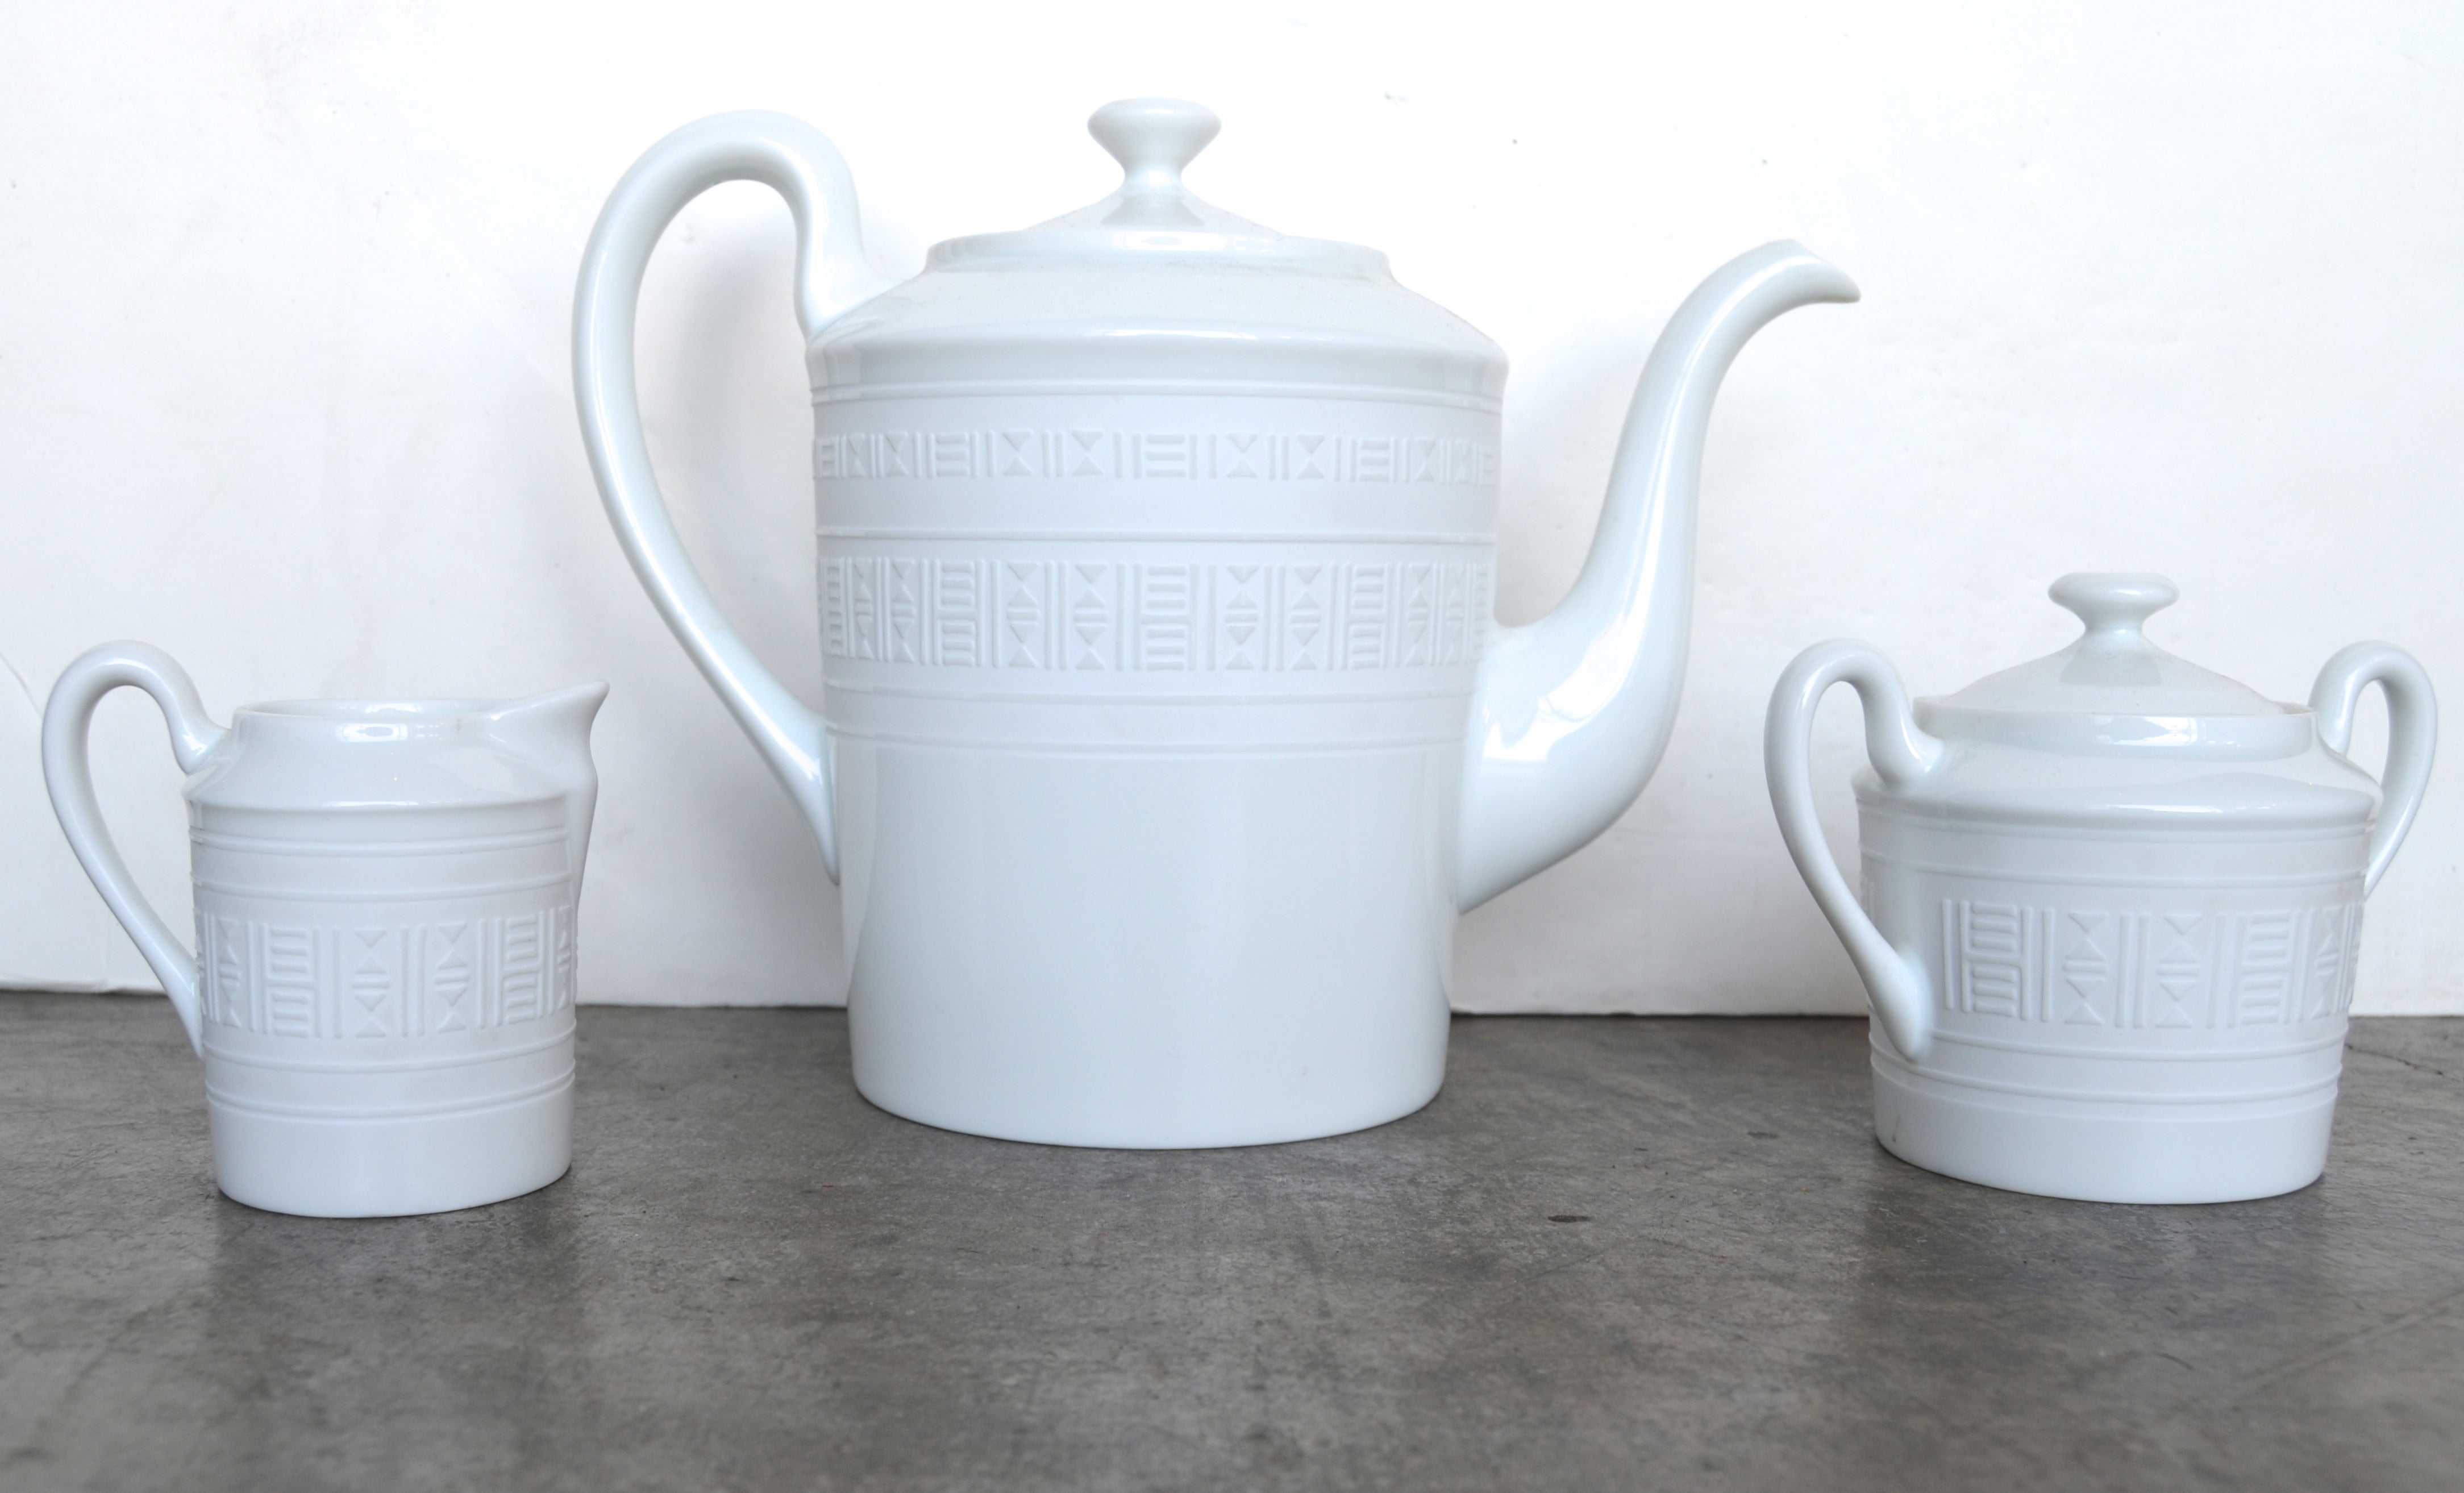 Hermes "Egee" Tea Set in White Porcelain